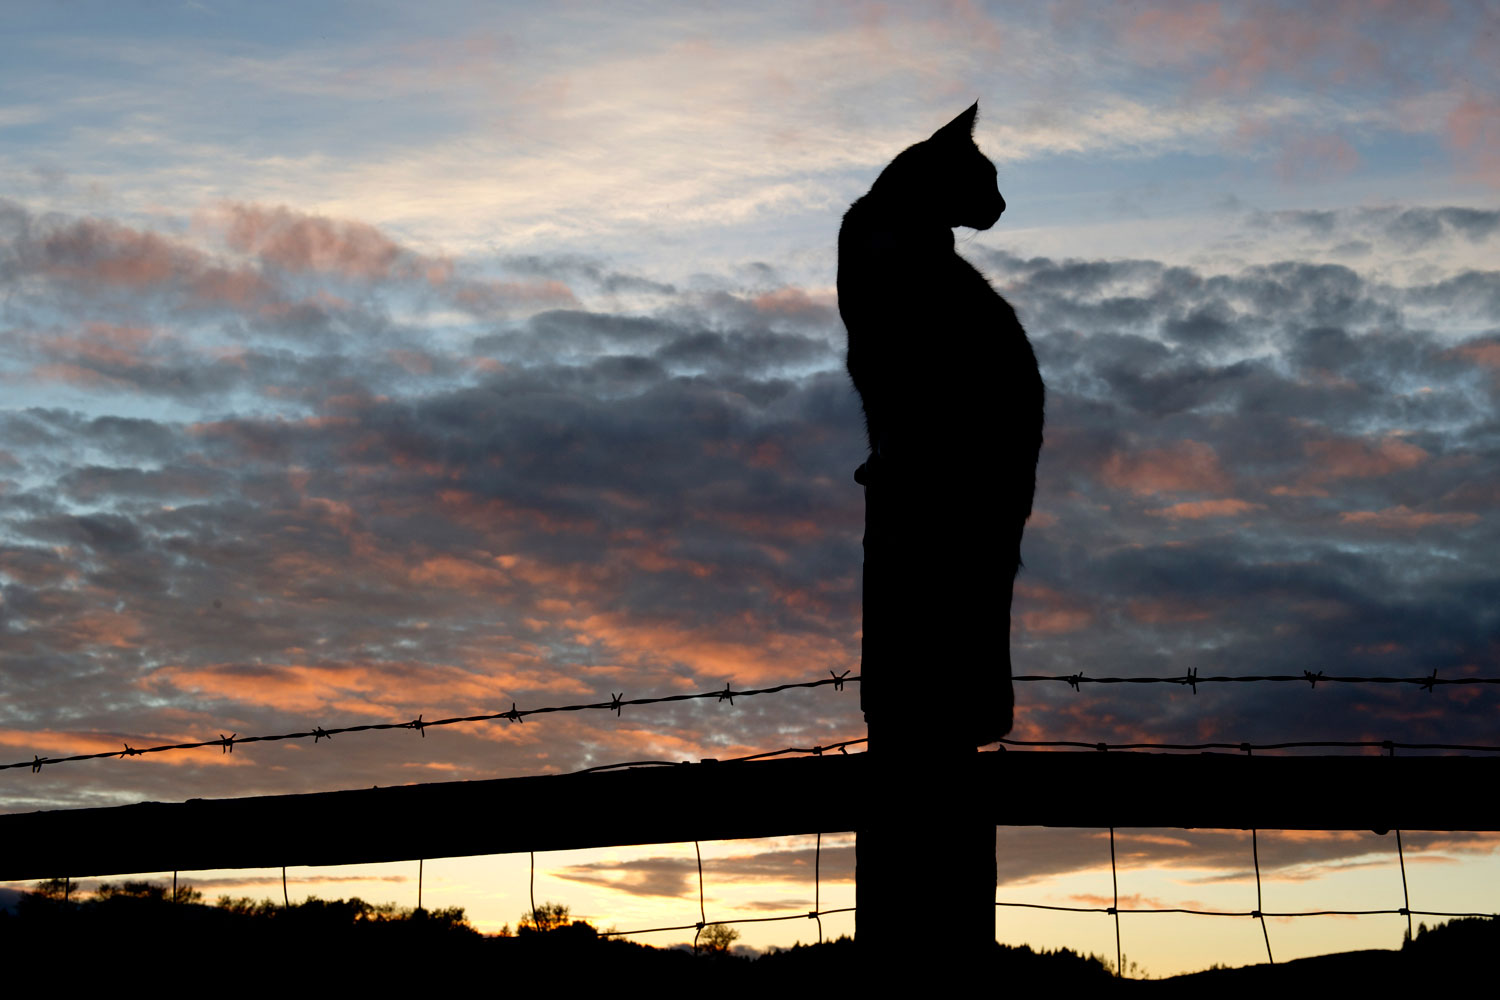 A cat climbs on a fence as the sun sets on a farm near Roseburg, July 21, 2011.